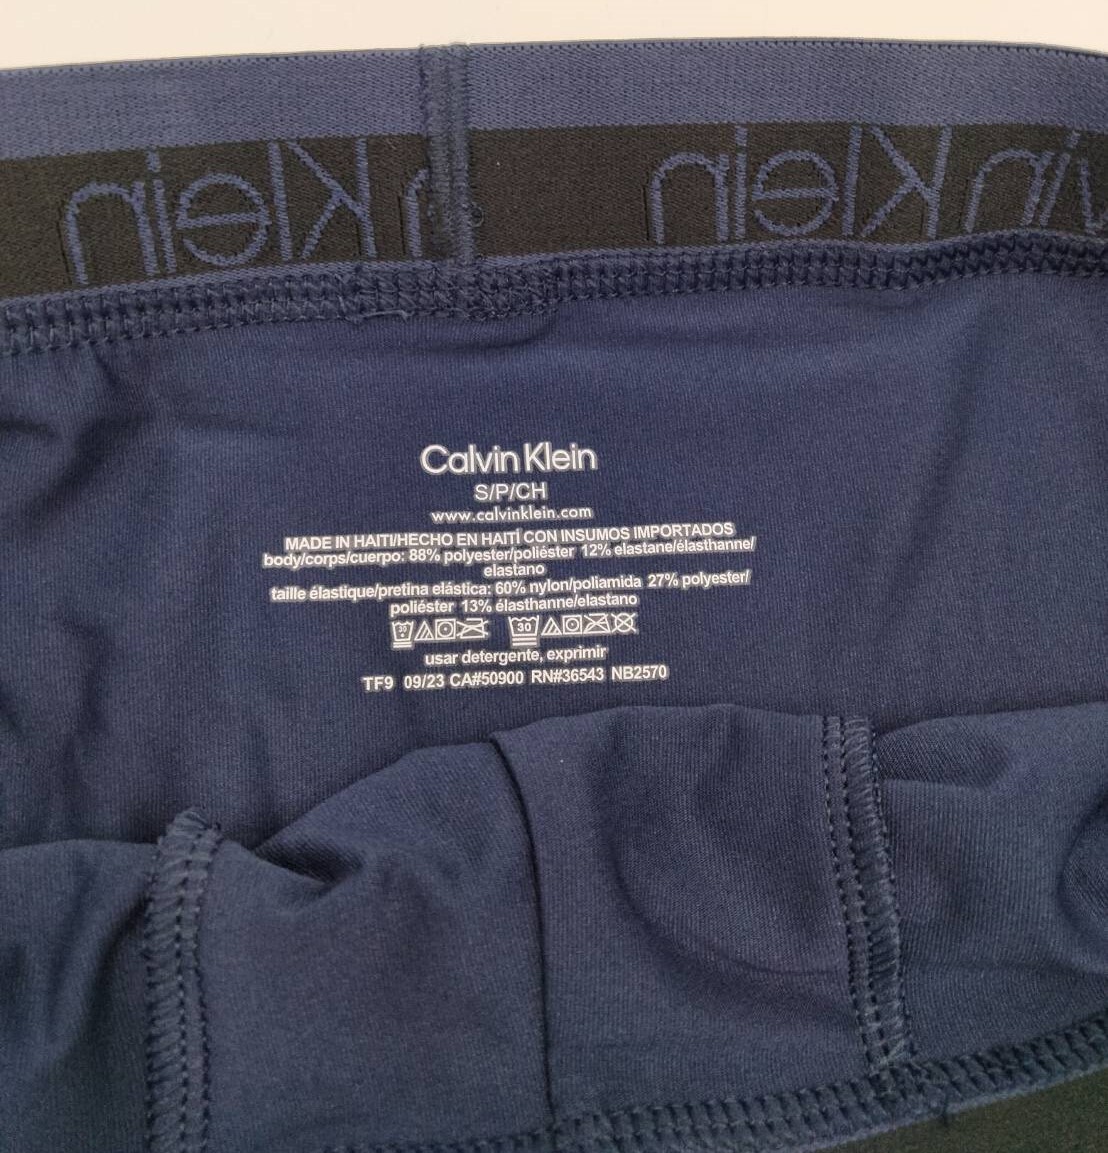 【Sサイズ】Calvin Klein(カルバンクライン) ボクサーパンツ ネイビー 1枚 メンズボクサーパンツ 男性下着 NB2570